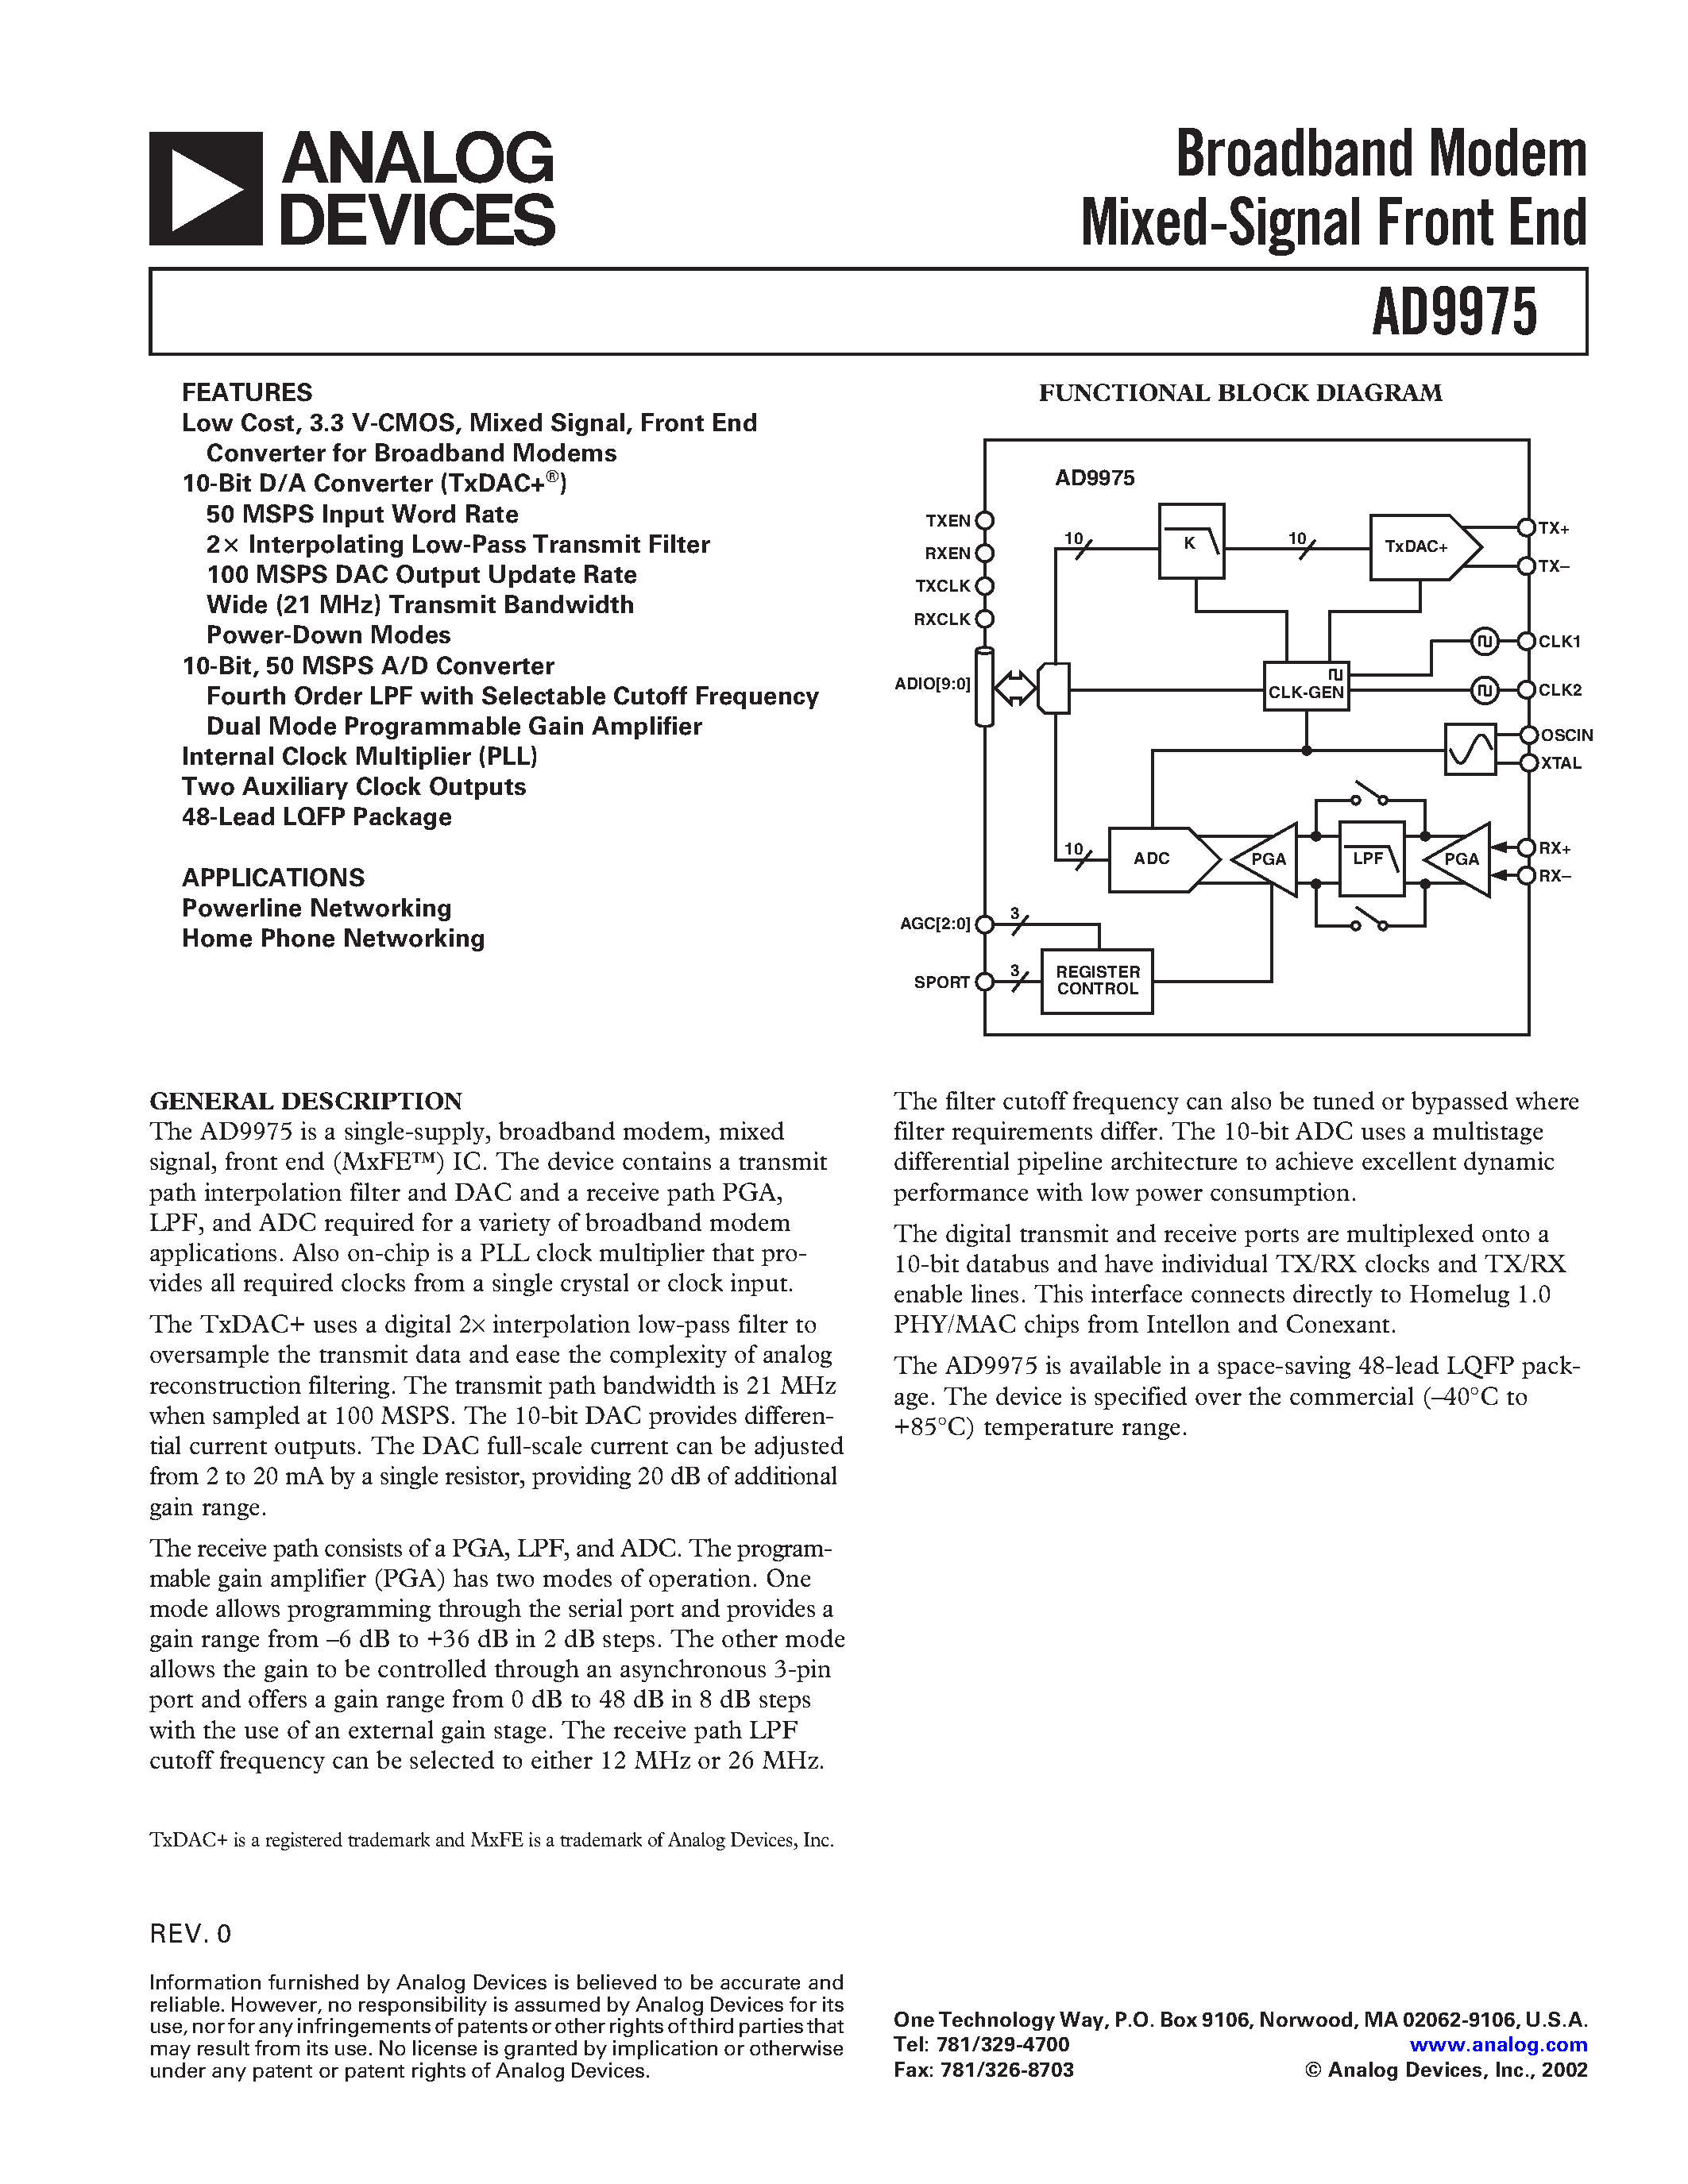 Даташит AD9975 - Broadband Modem Mixed-Signal Front End страница 1